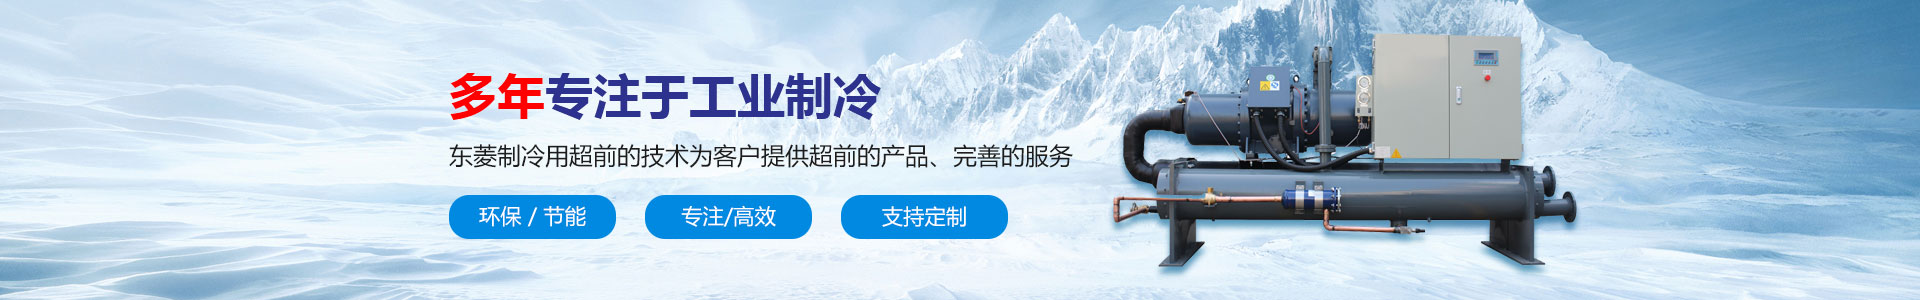 深圳市东菱制冷设备有限公司_低温式冷水机